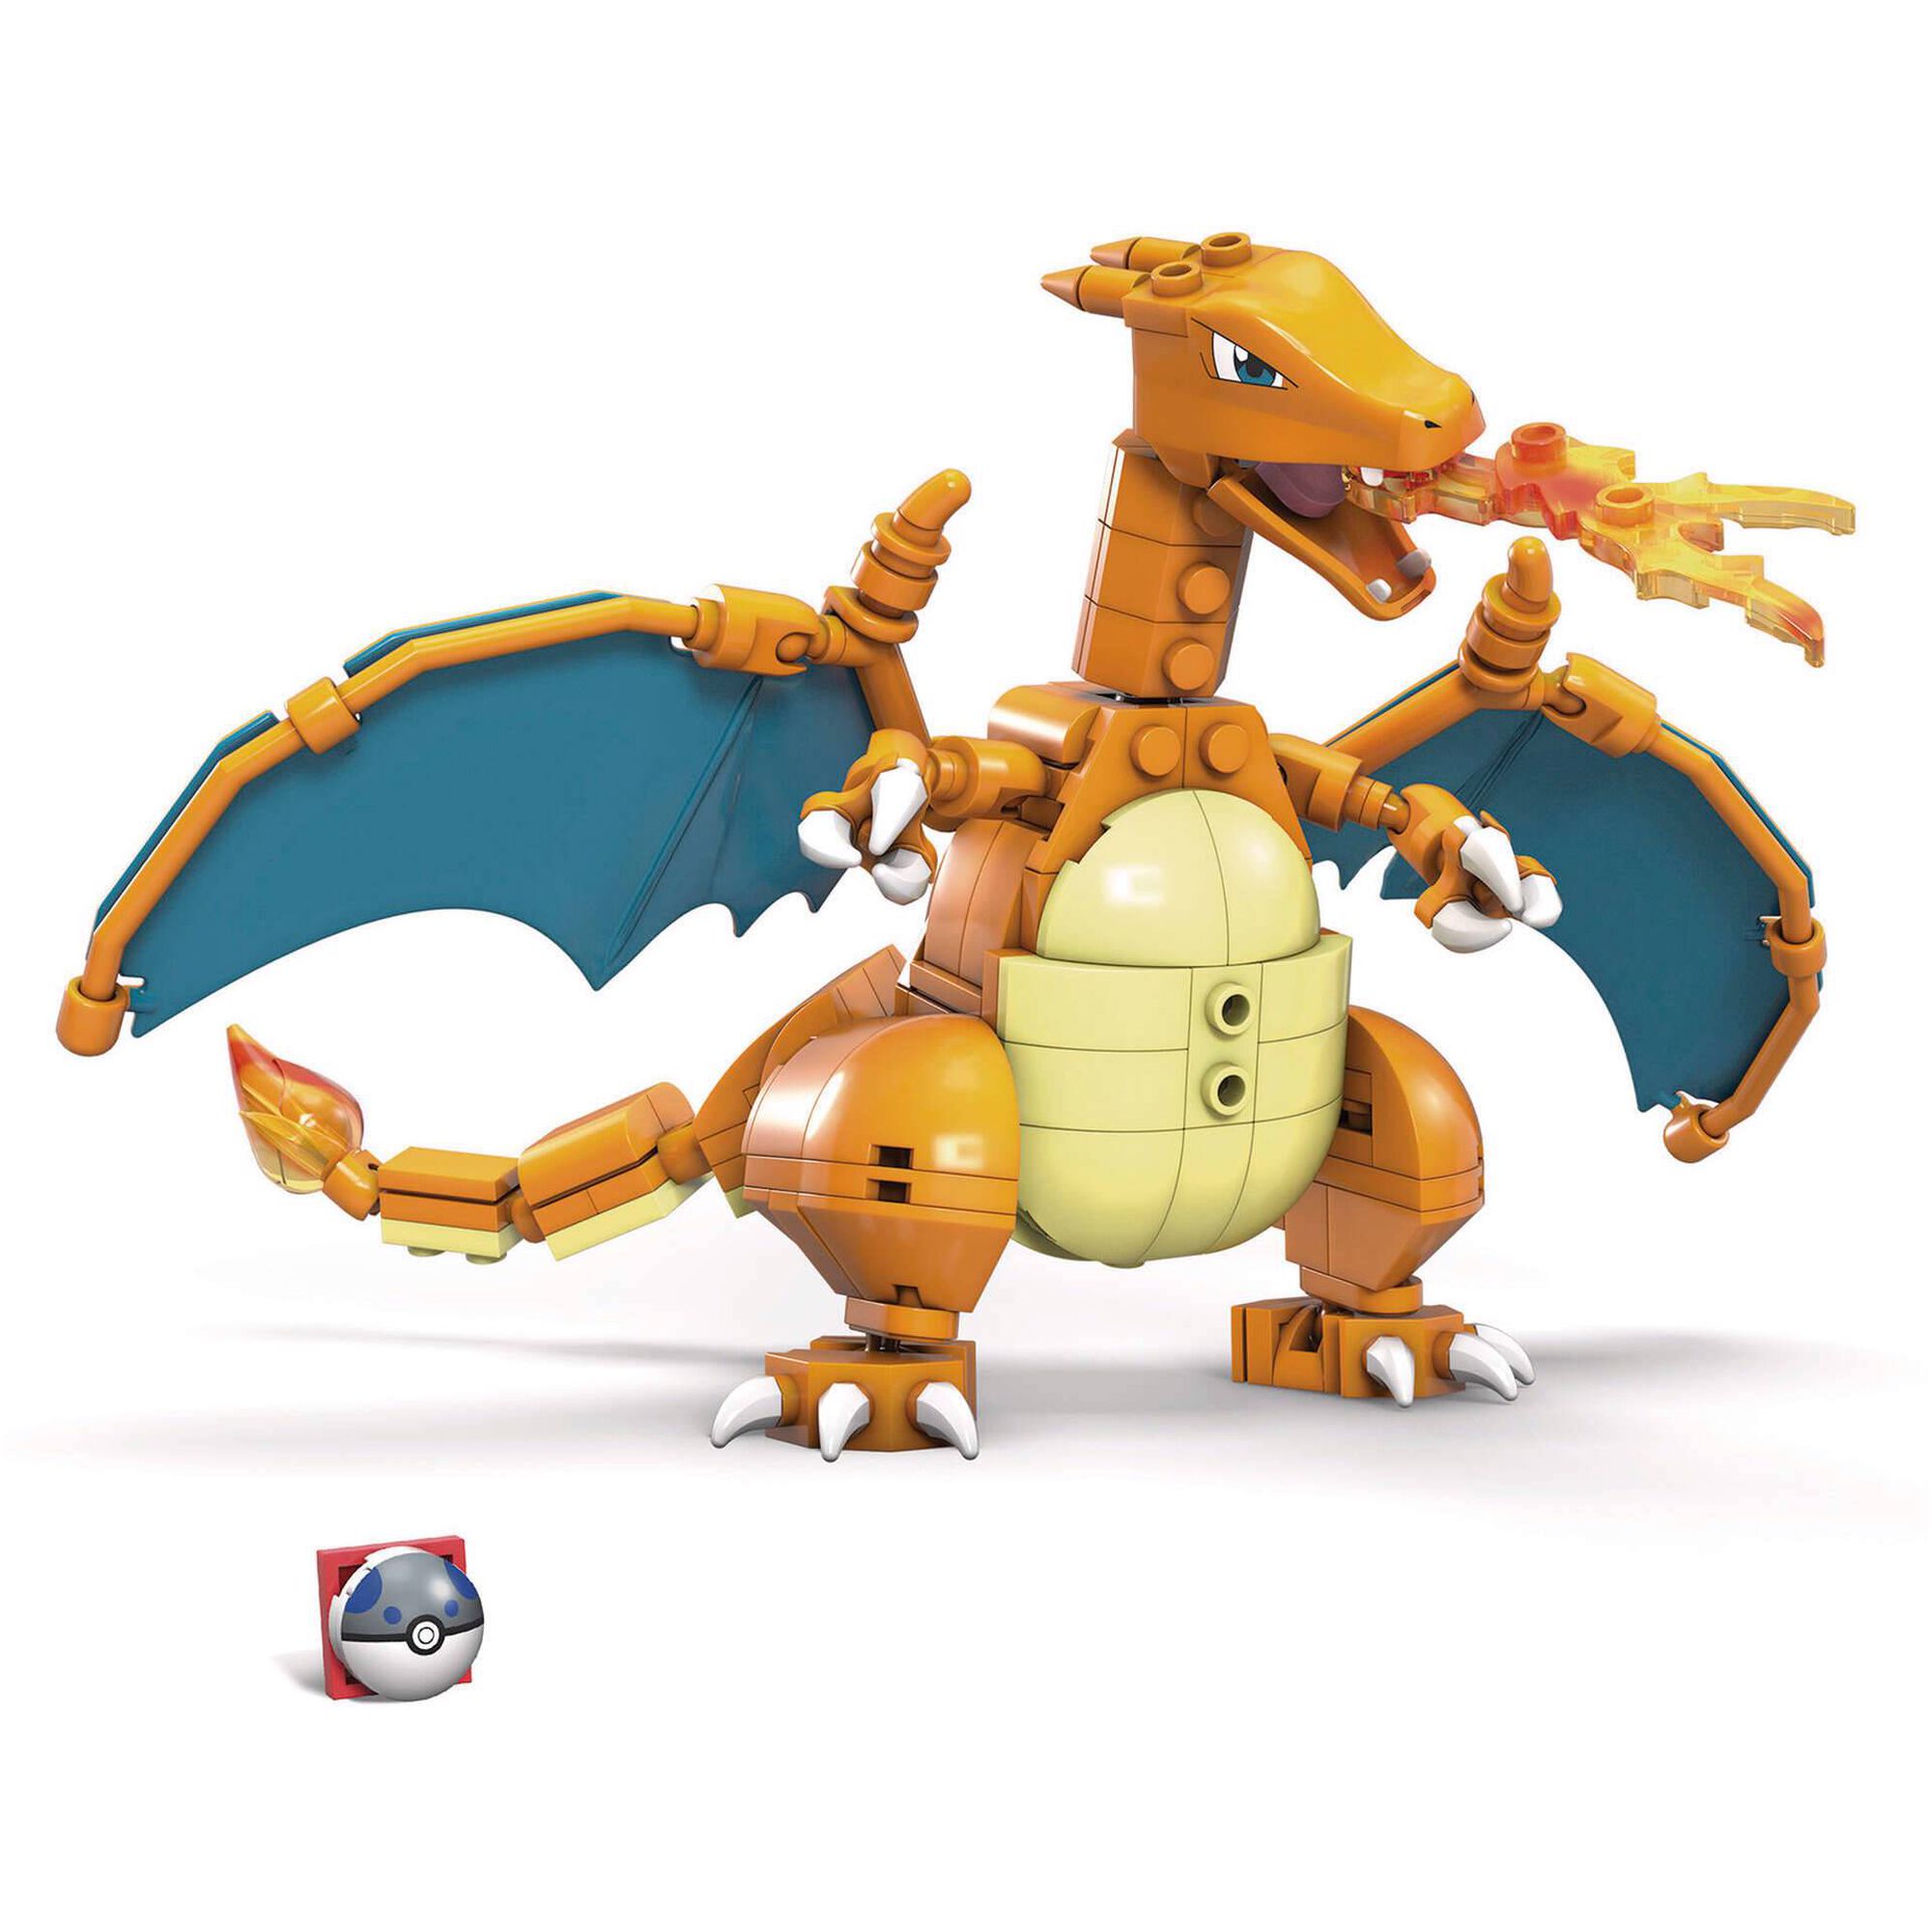 Mega Construx Pokémon - Charizard